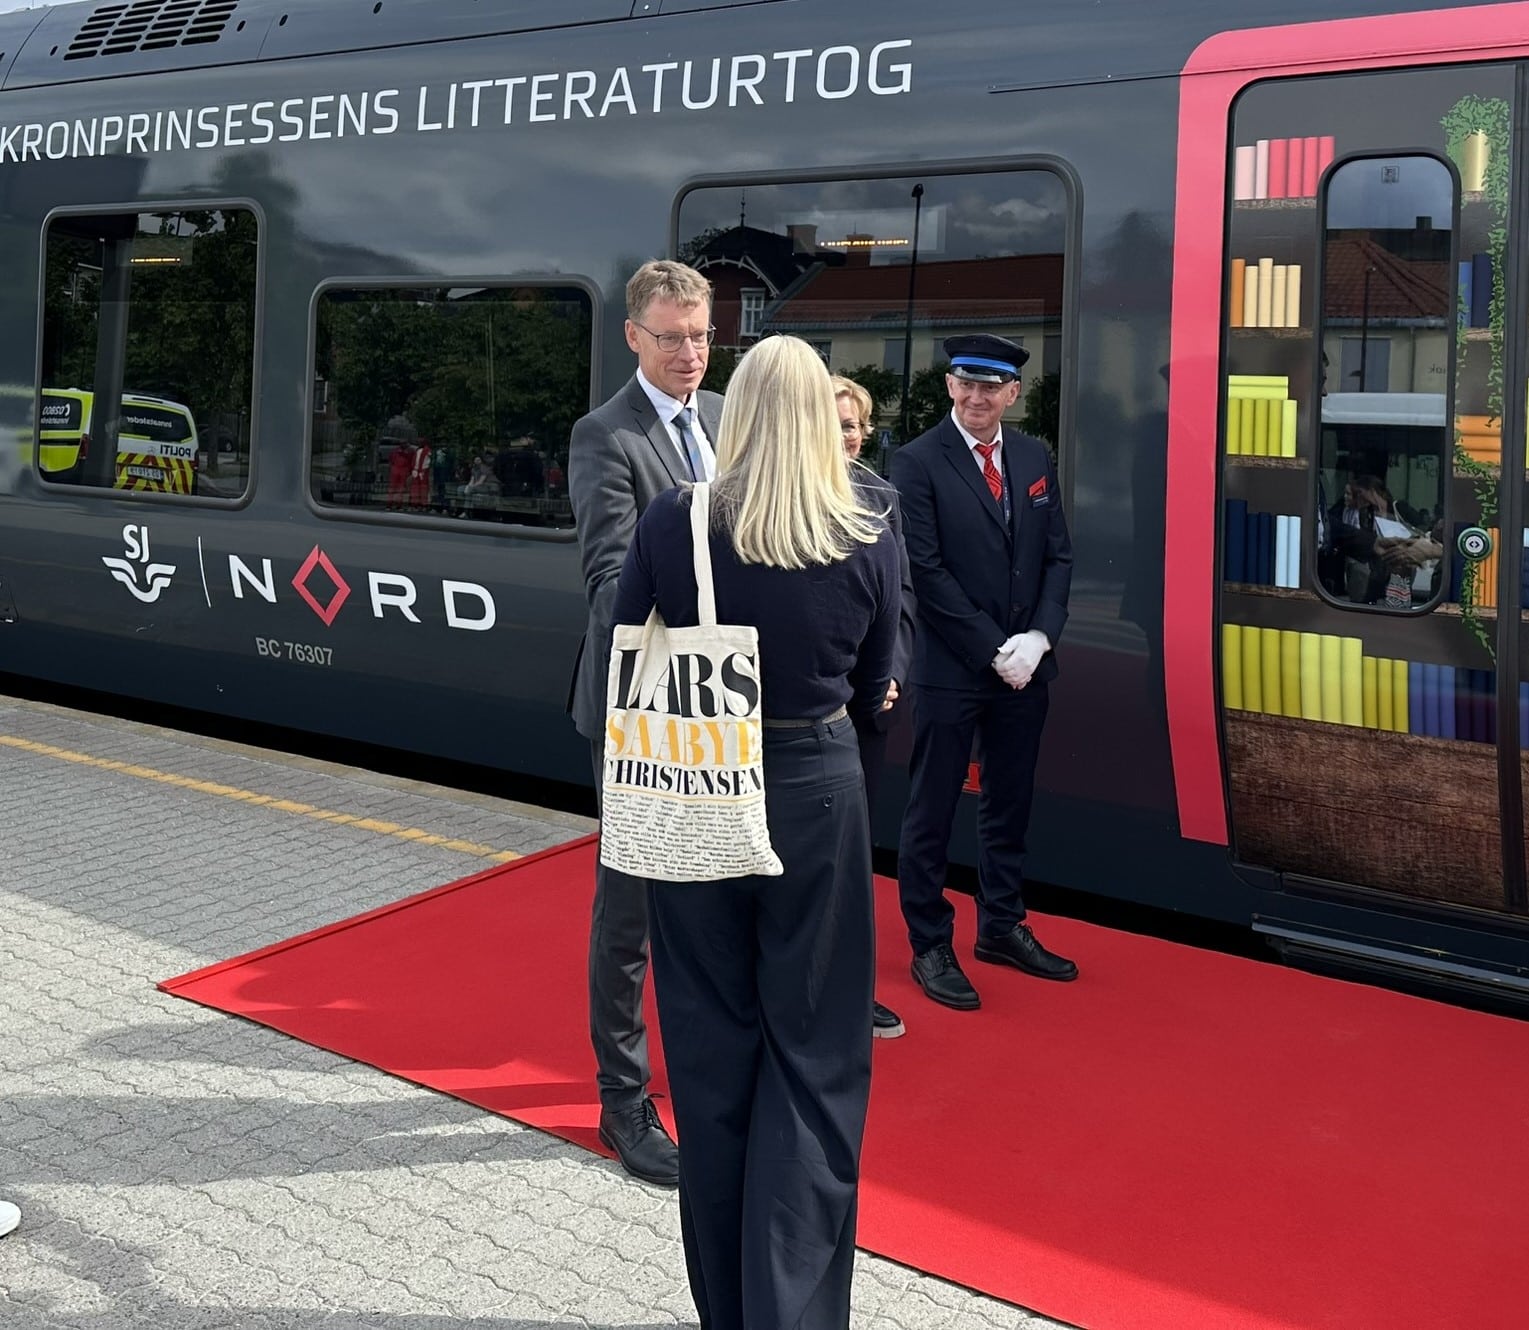 Jernbanedirektør Knutt Sletta ønsker sammen med SJNorge - direktør Rikke Lind og konduktør Frode Barmoen HKH Kronprinsesse Mette Marit velkommen ombord på Litteraturtoget.